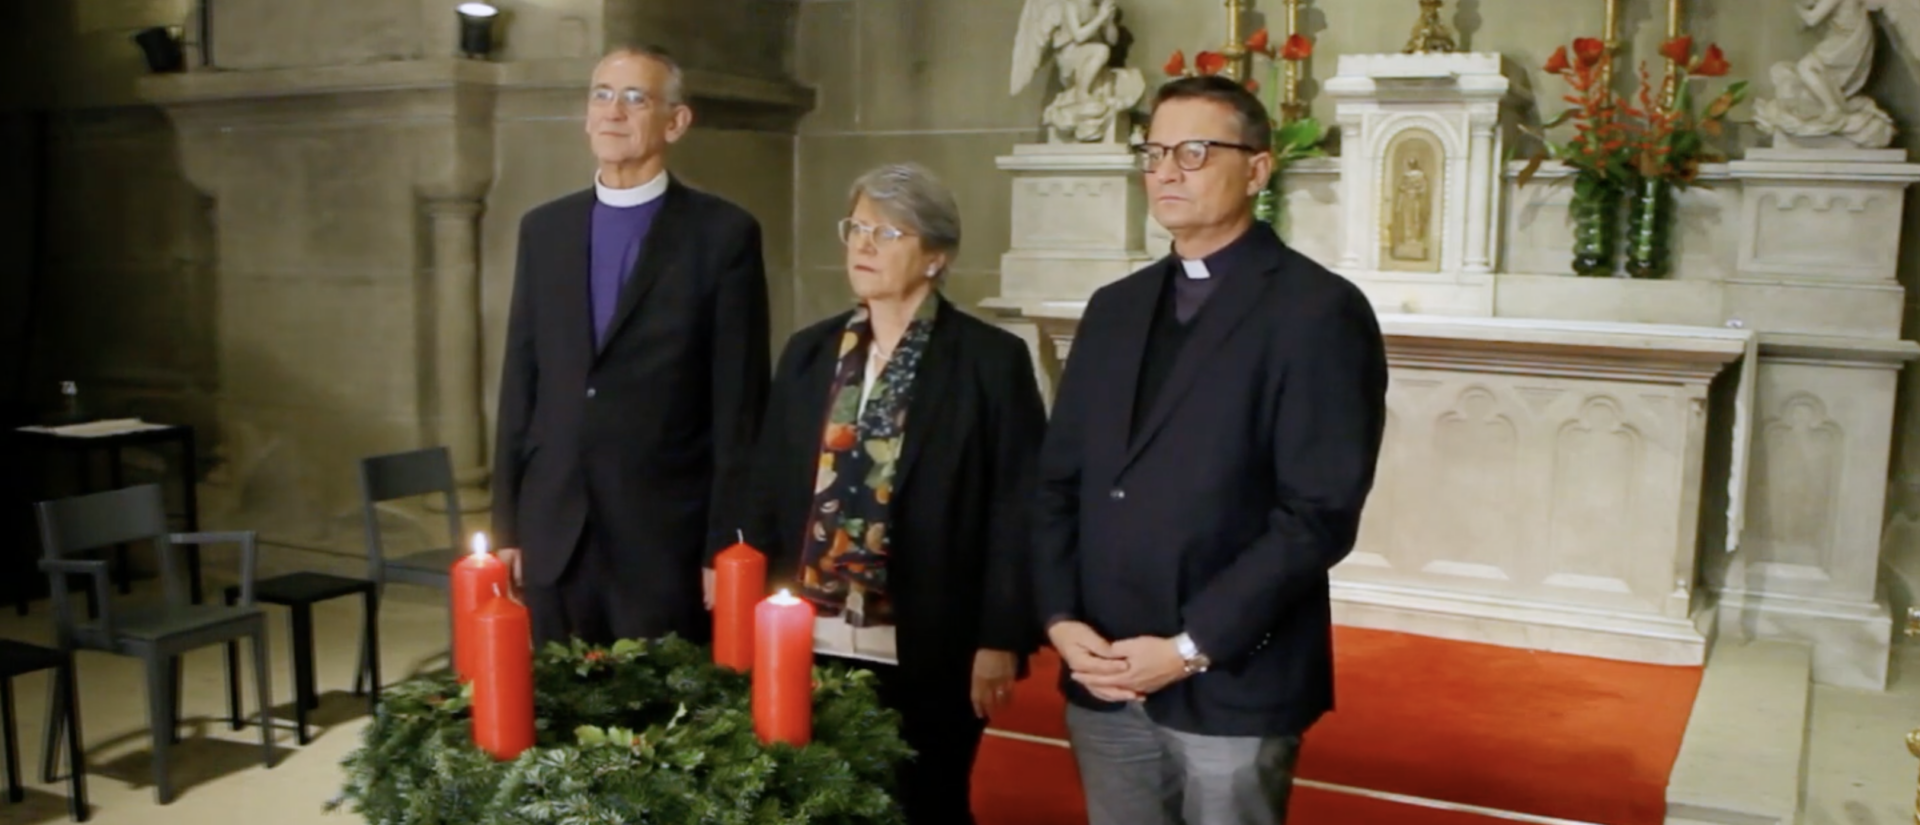 Les "trois visages" des Eglises nationales en Suisse donnent leurs voeux de Noël (de g. à d.) Harald Rein, évêque catholique-chrétien, Rita Famos, présidente de l'EERS, Mgr Felix Gmür, président de la CES | capture d'écran YouTube